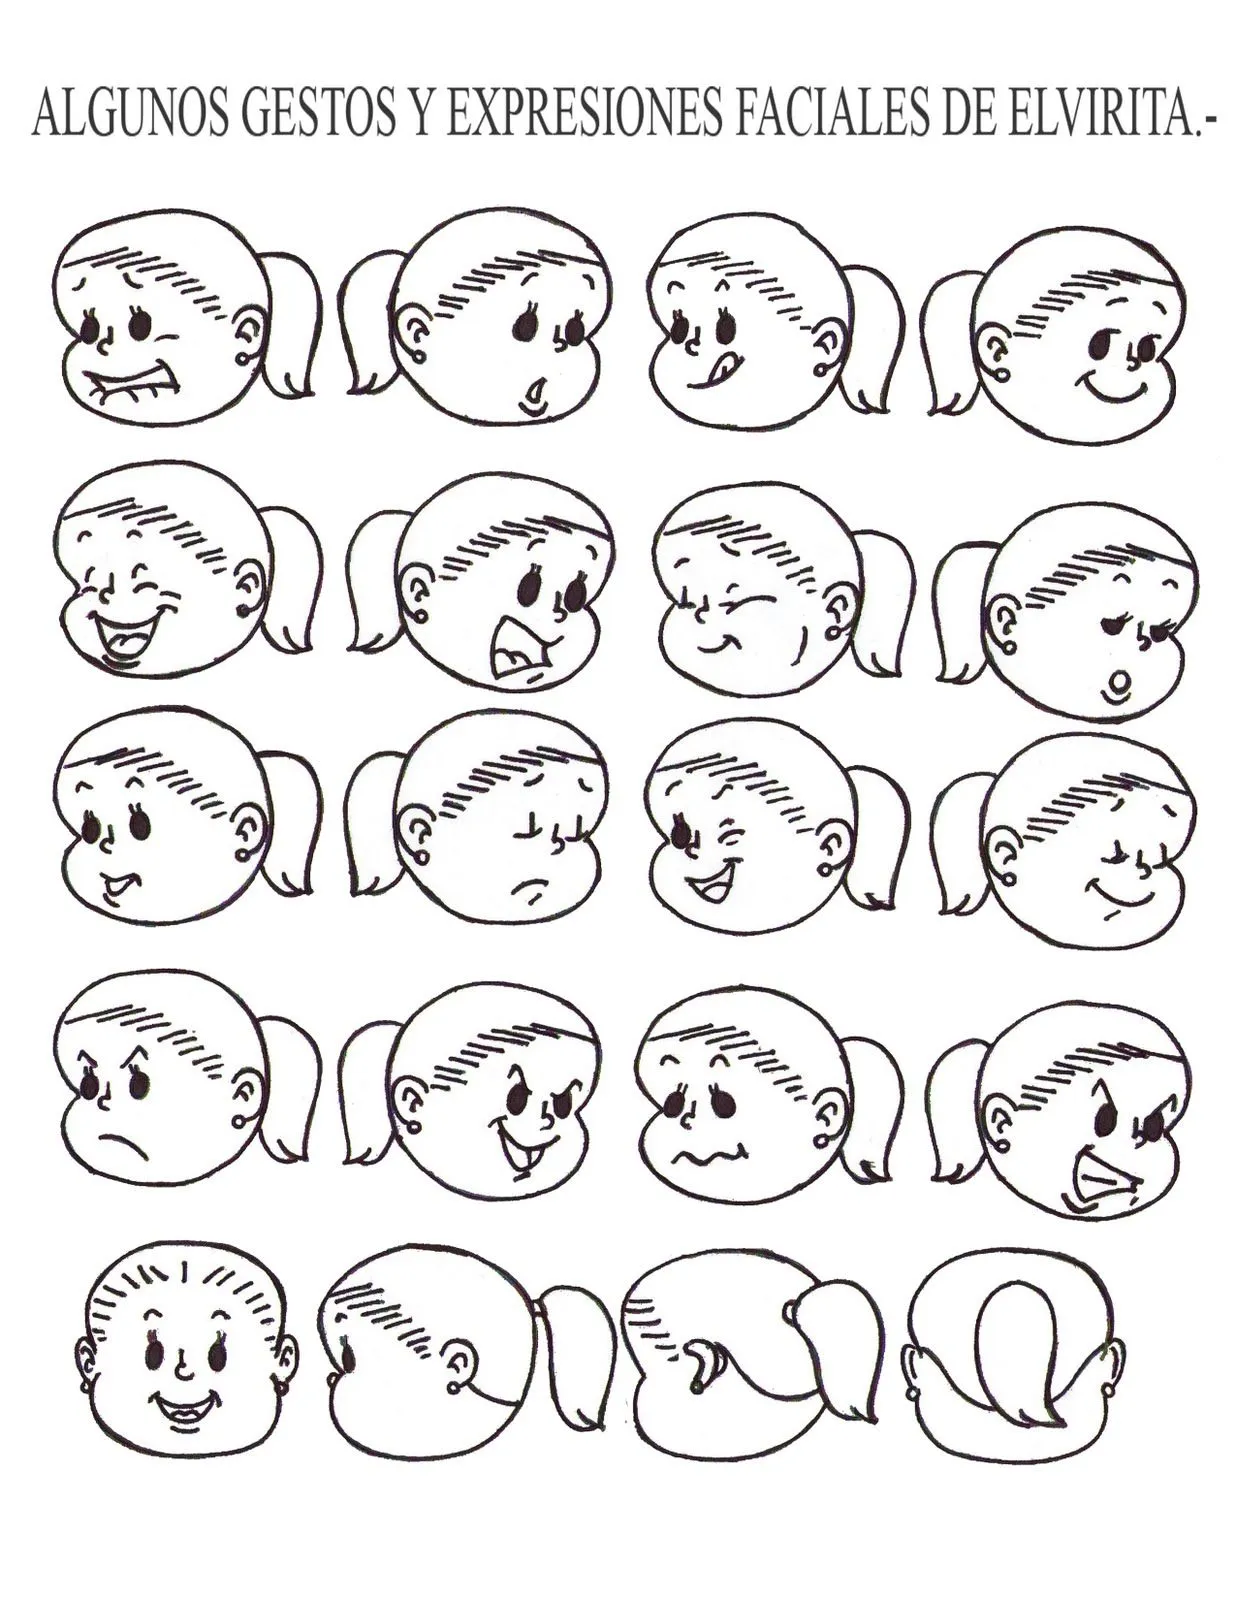 Ilustraciones, monos y dibujos: mayo 2010